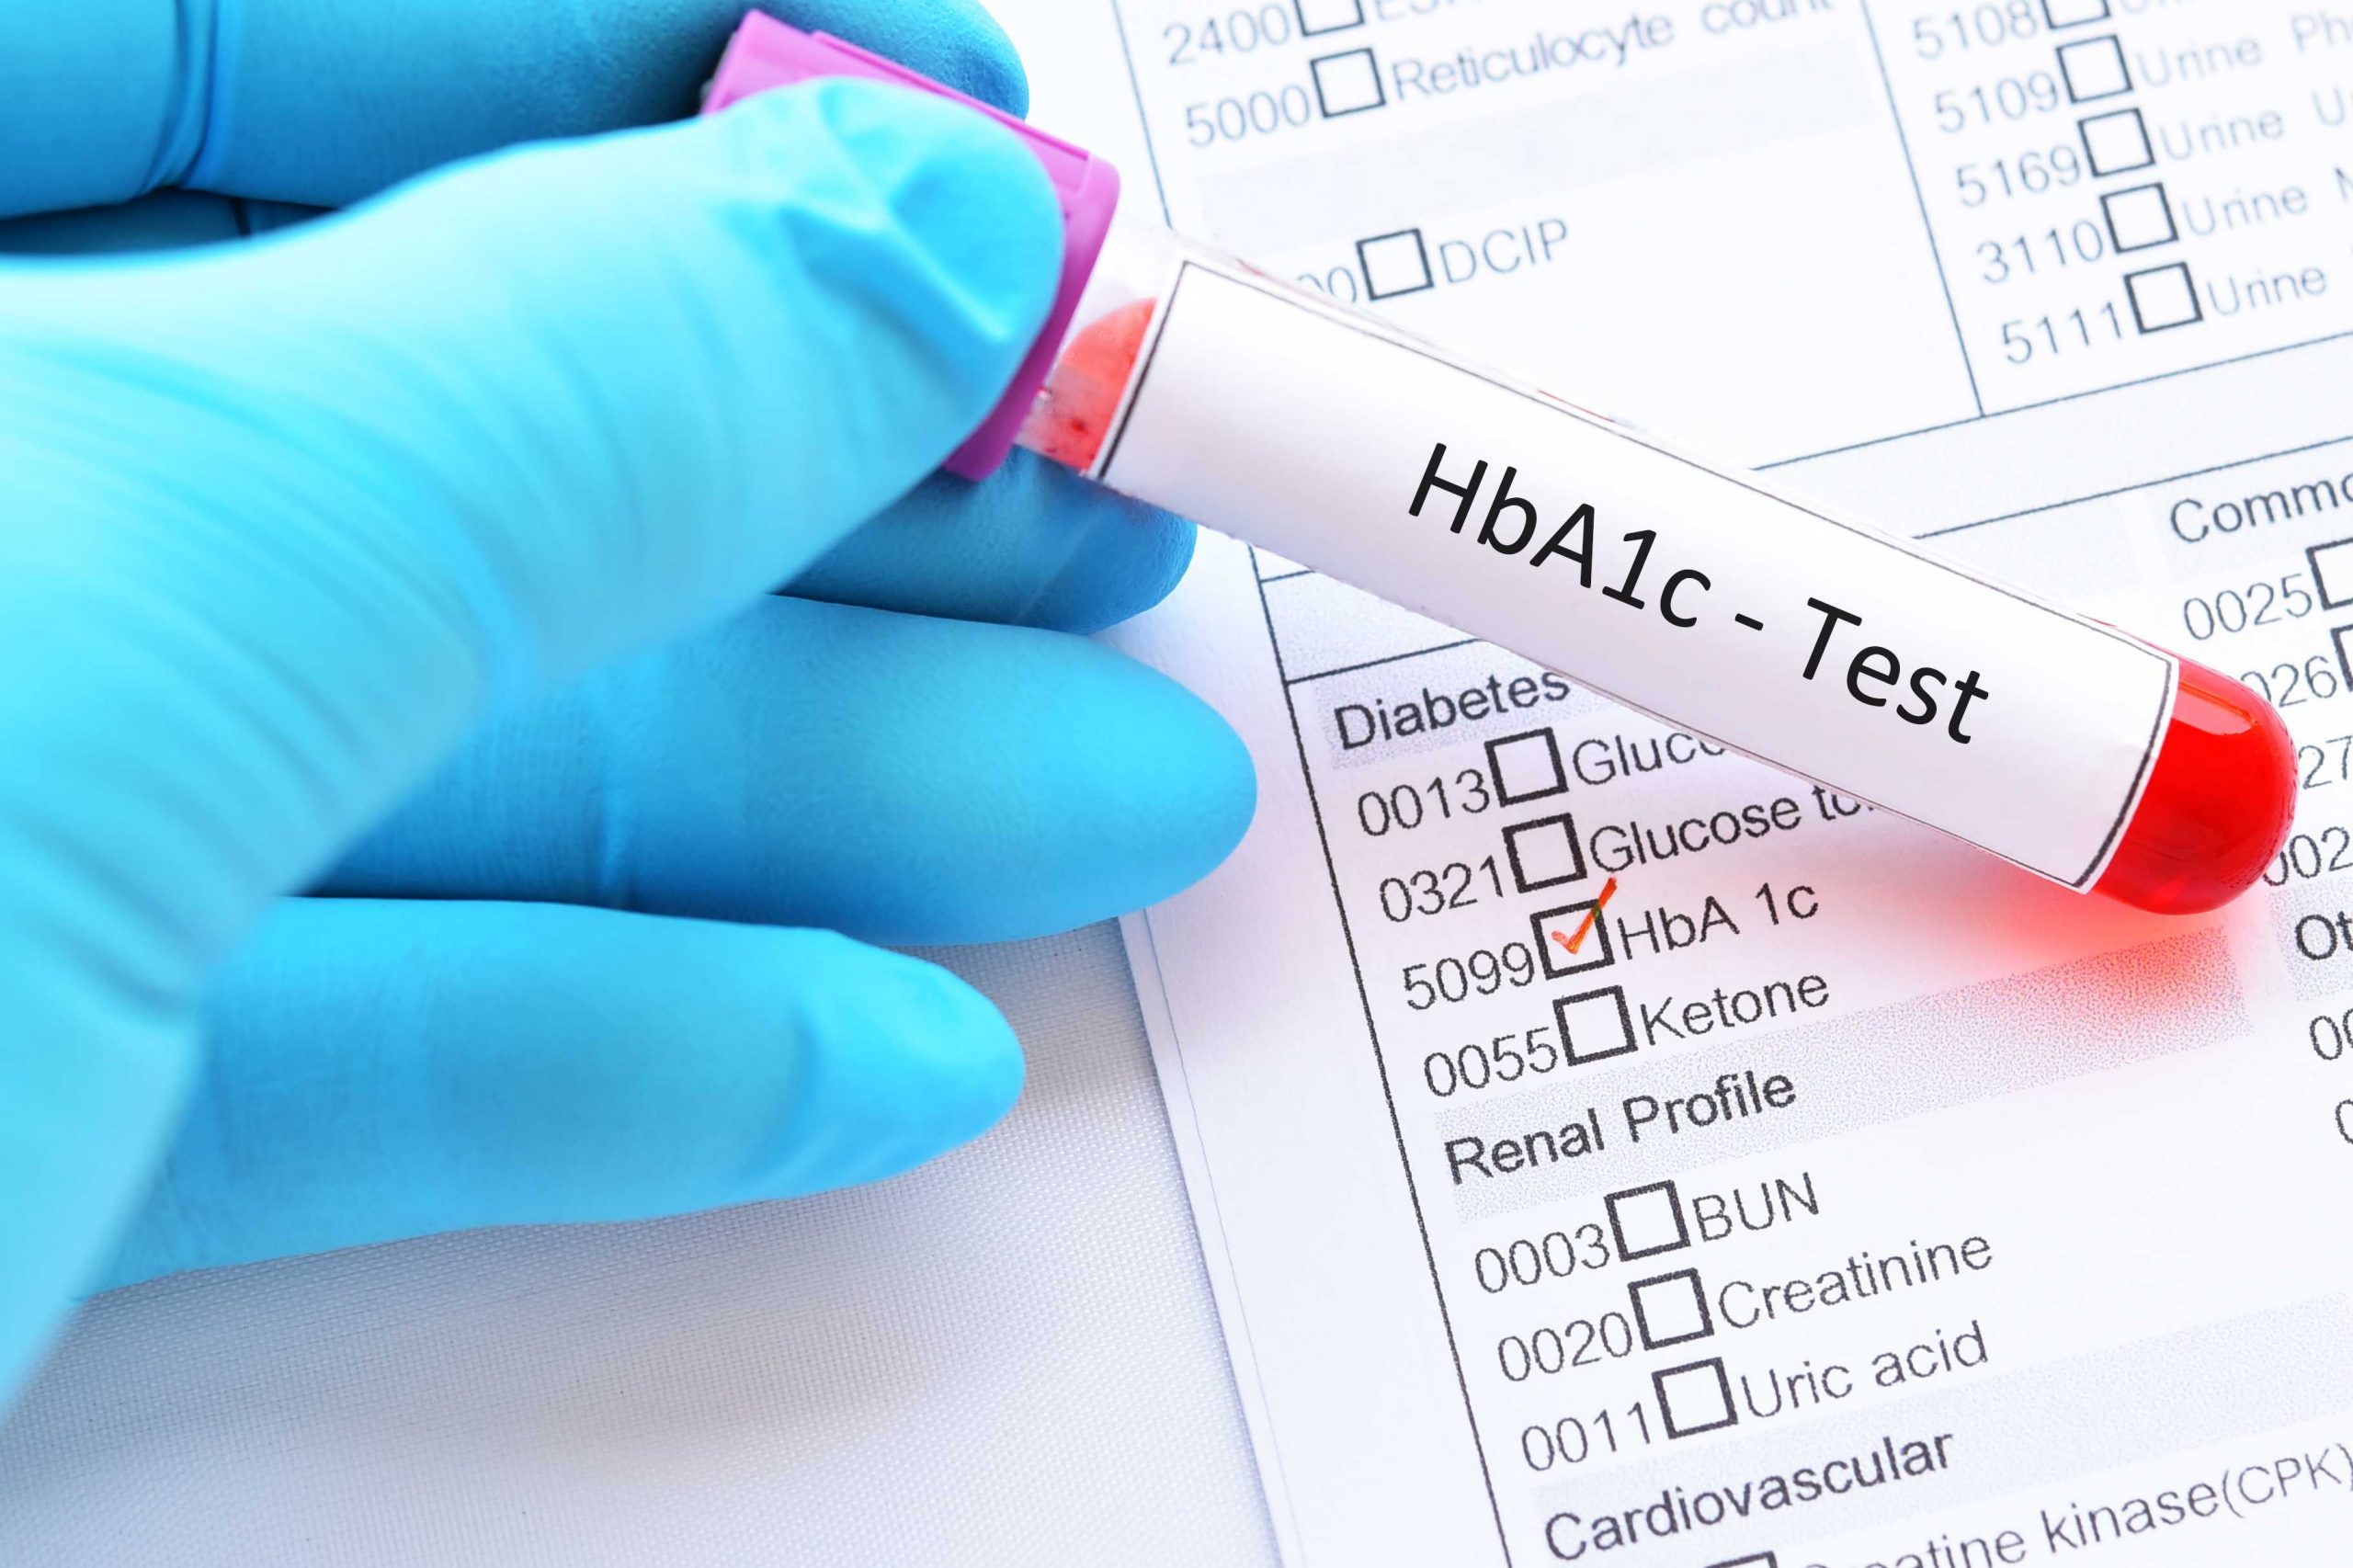 HbA1c Test for Diabetes